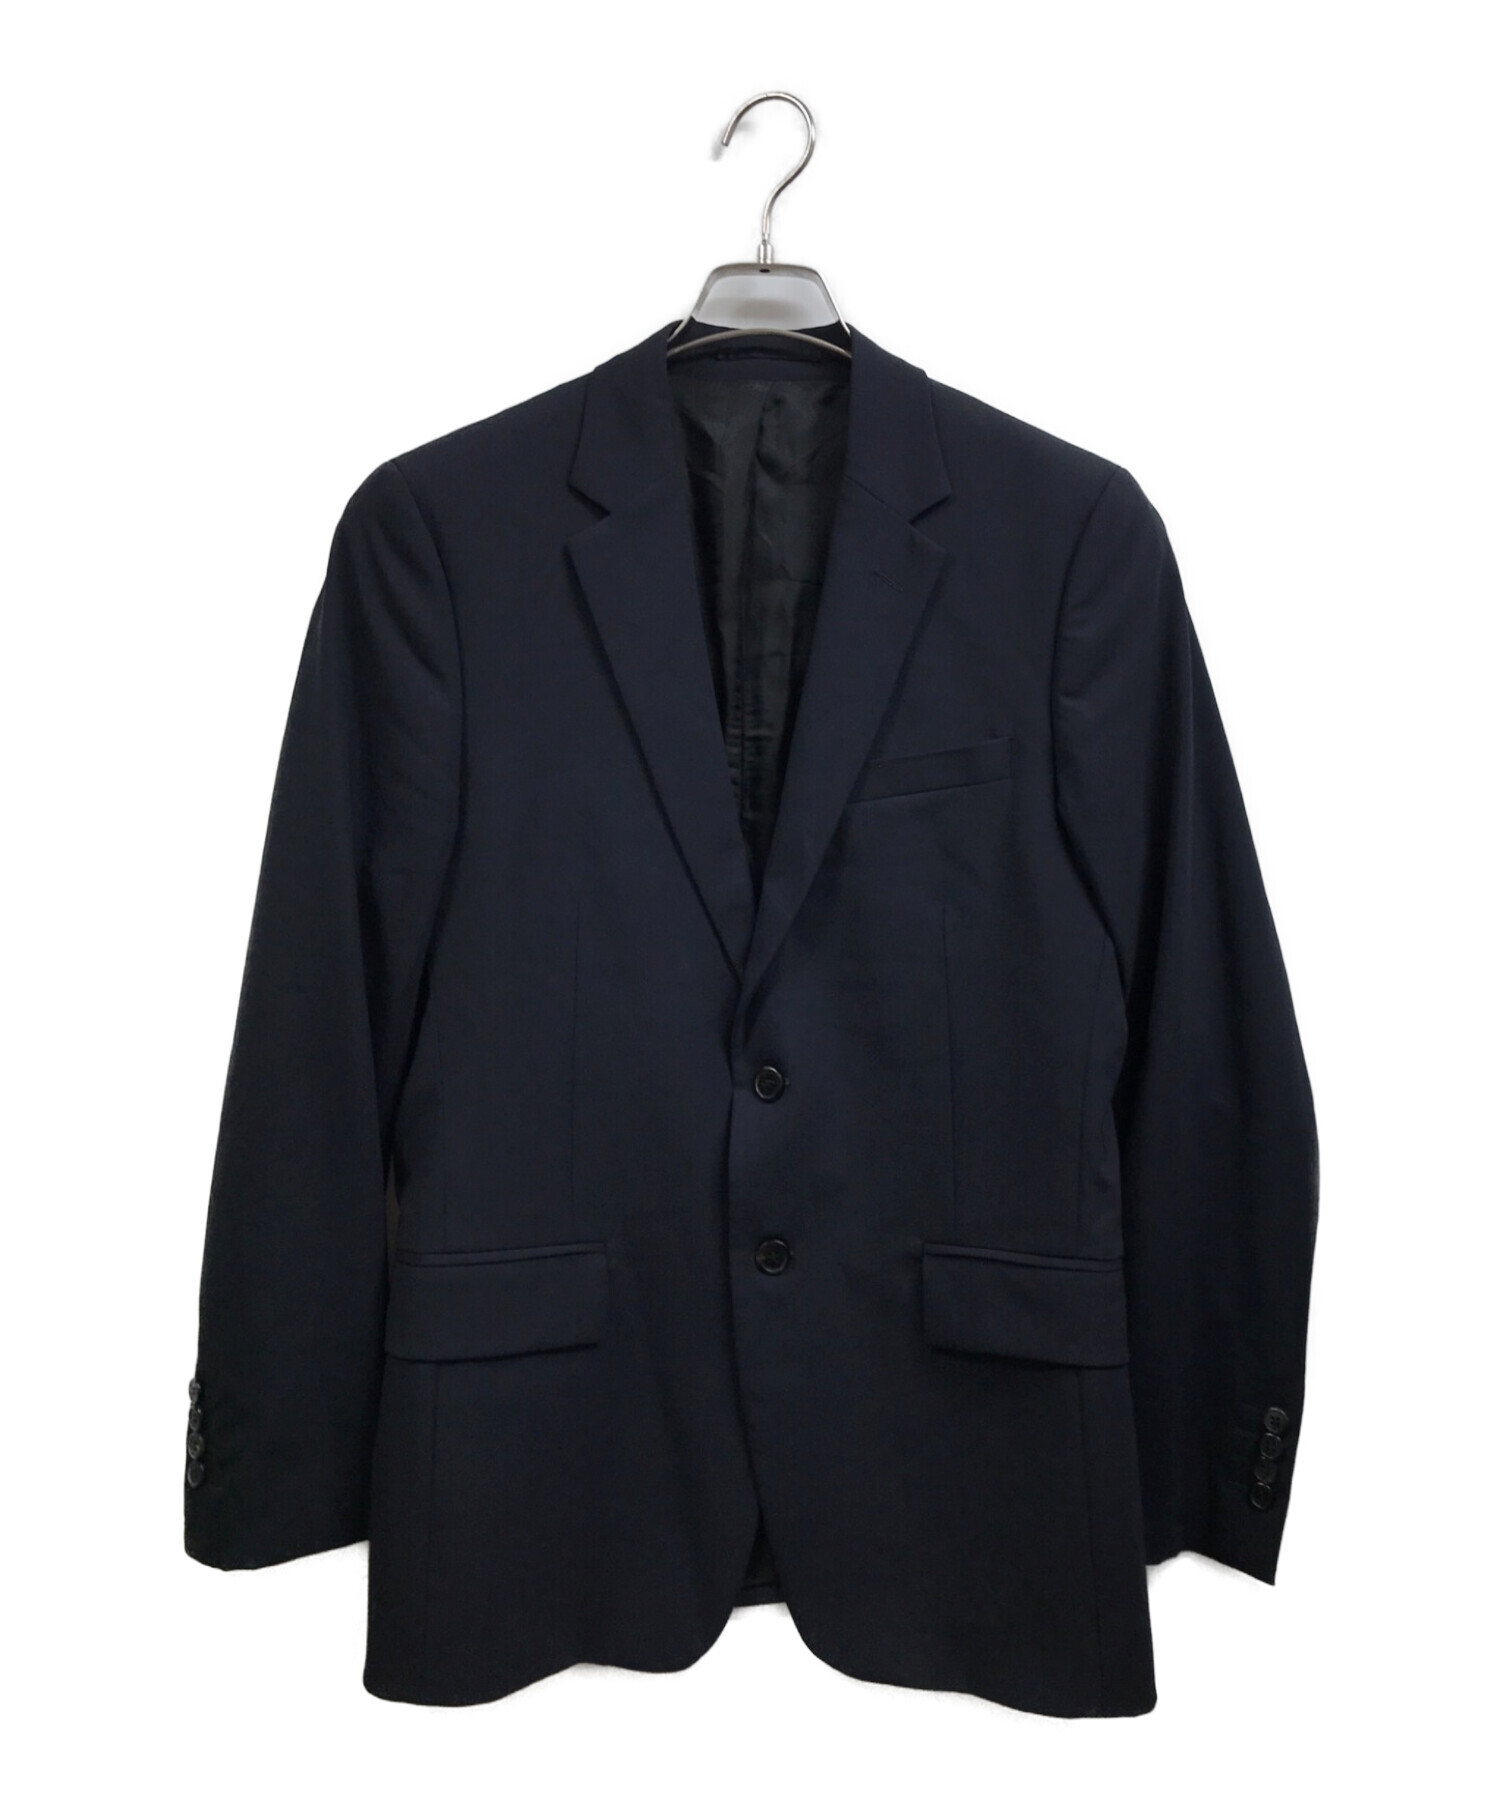 PRADA プラダ スーツ サイズ46R - スーツ